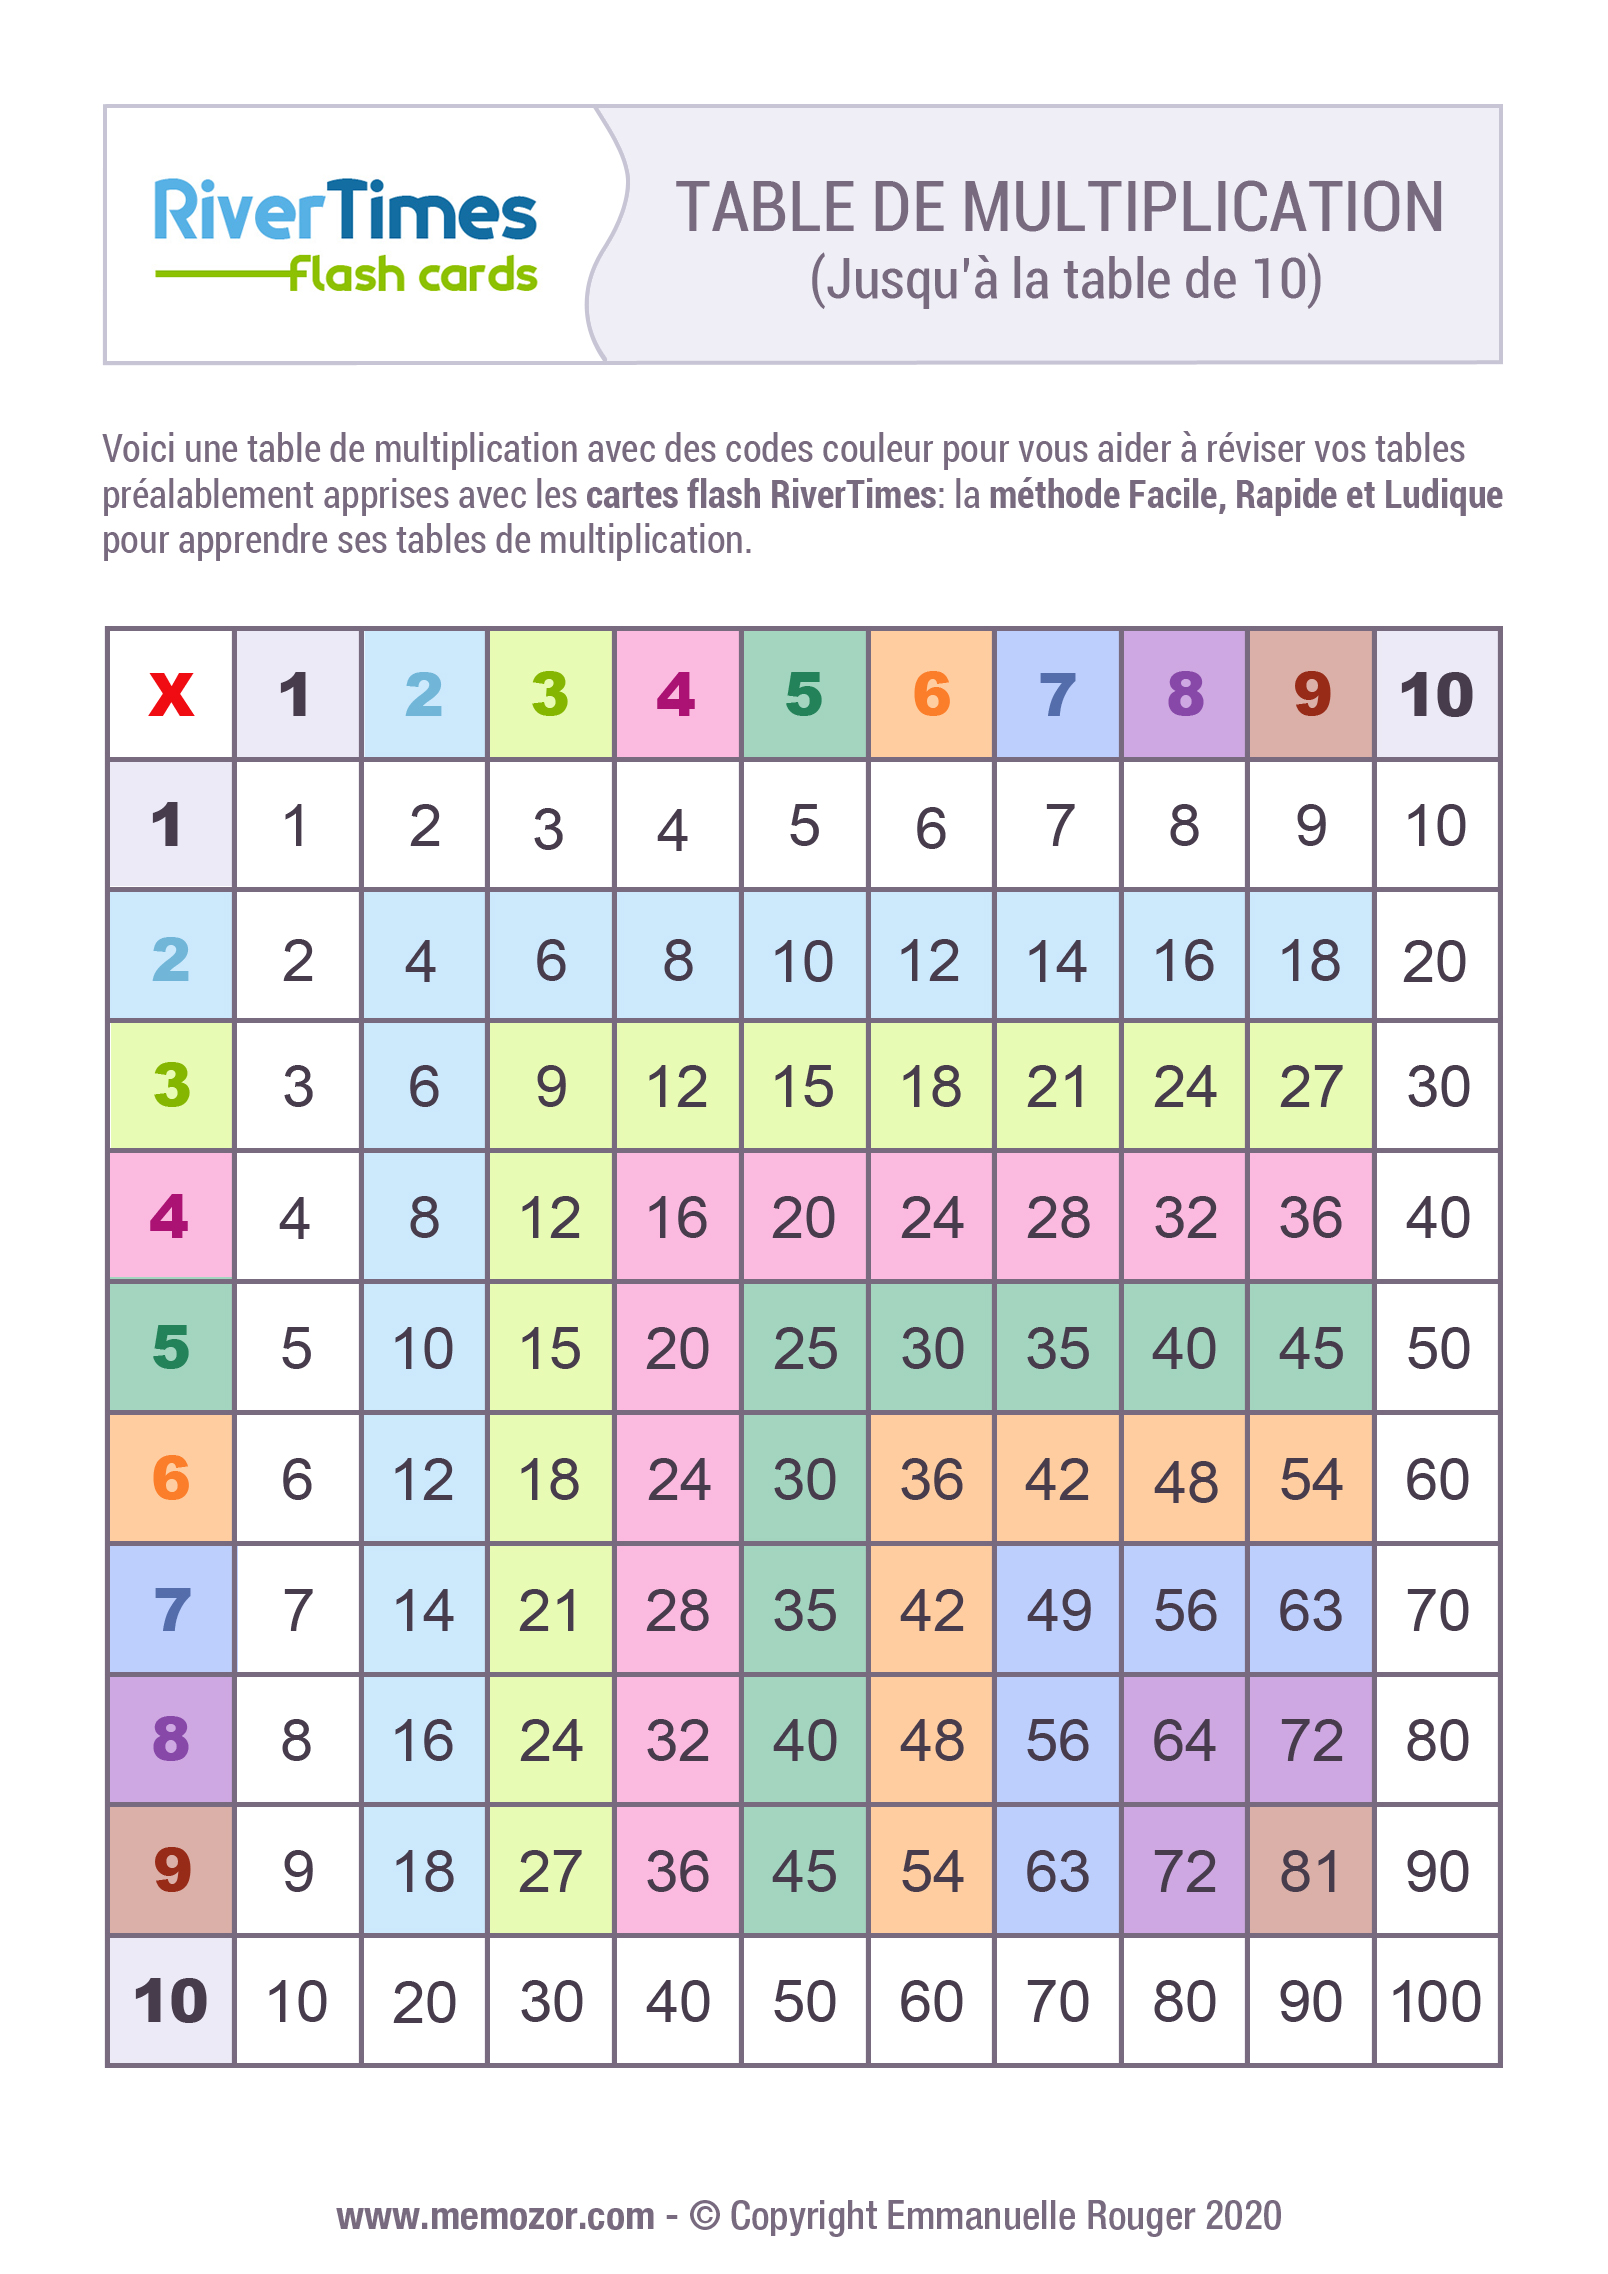 table-de-multiplication-color-e-de-1-10-imprimer-rivertimes